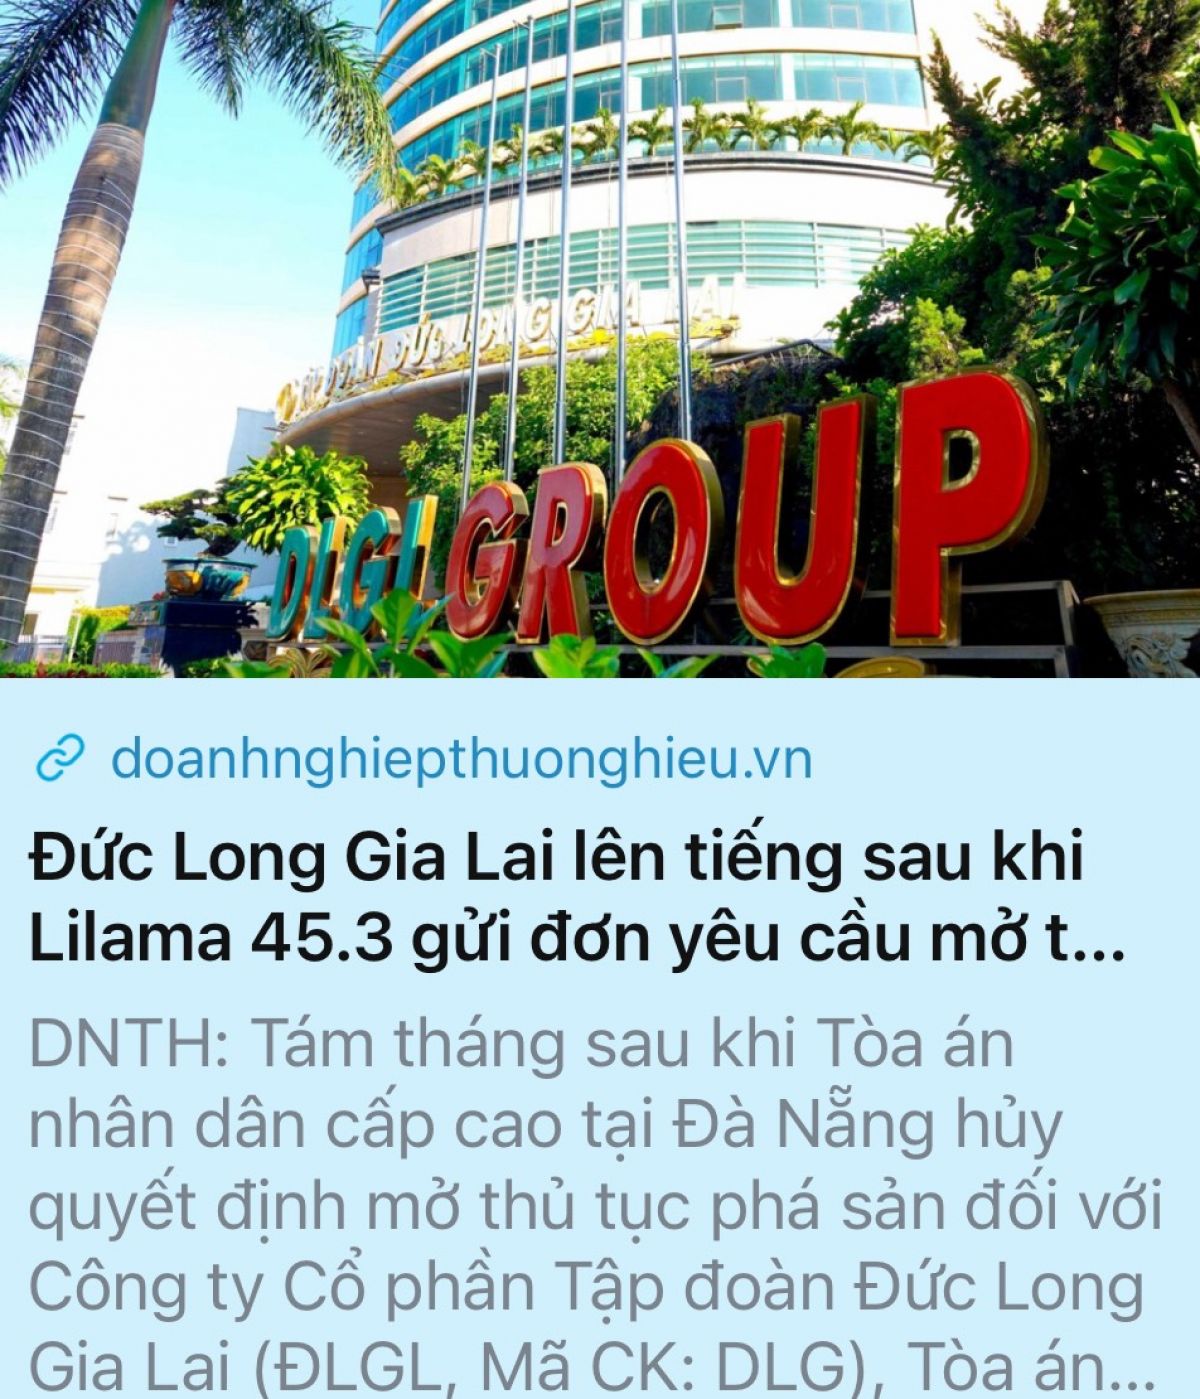 https://doanhnghiepthuonghieu.vn/duc-long-gia-lai-len-tieng-sau-khi-lilama-45-3-gui-don-yeu-cau-mo-thu-tuc-pha-san-lan-21-p56631.html